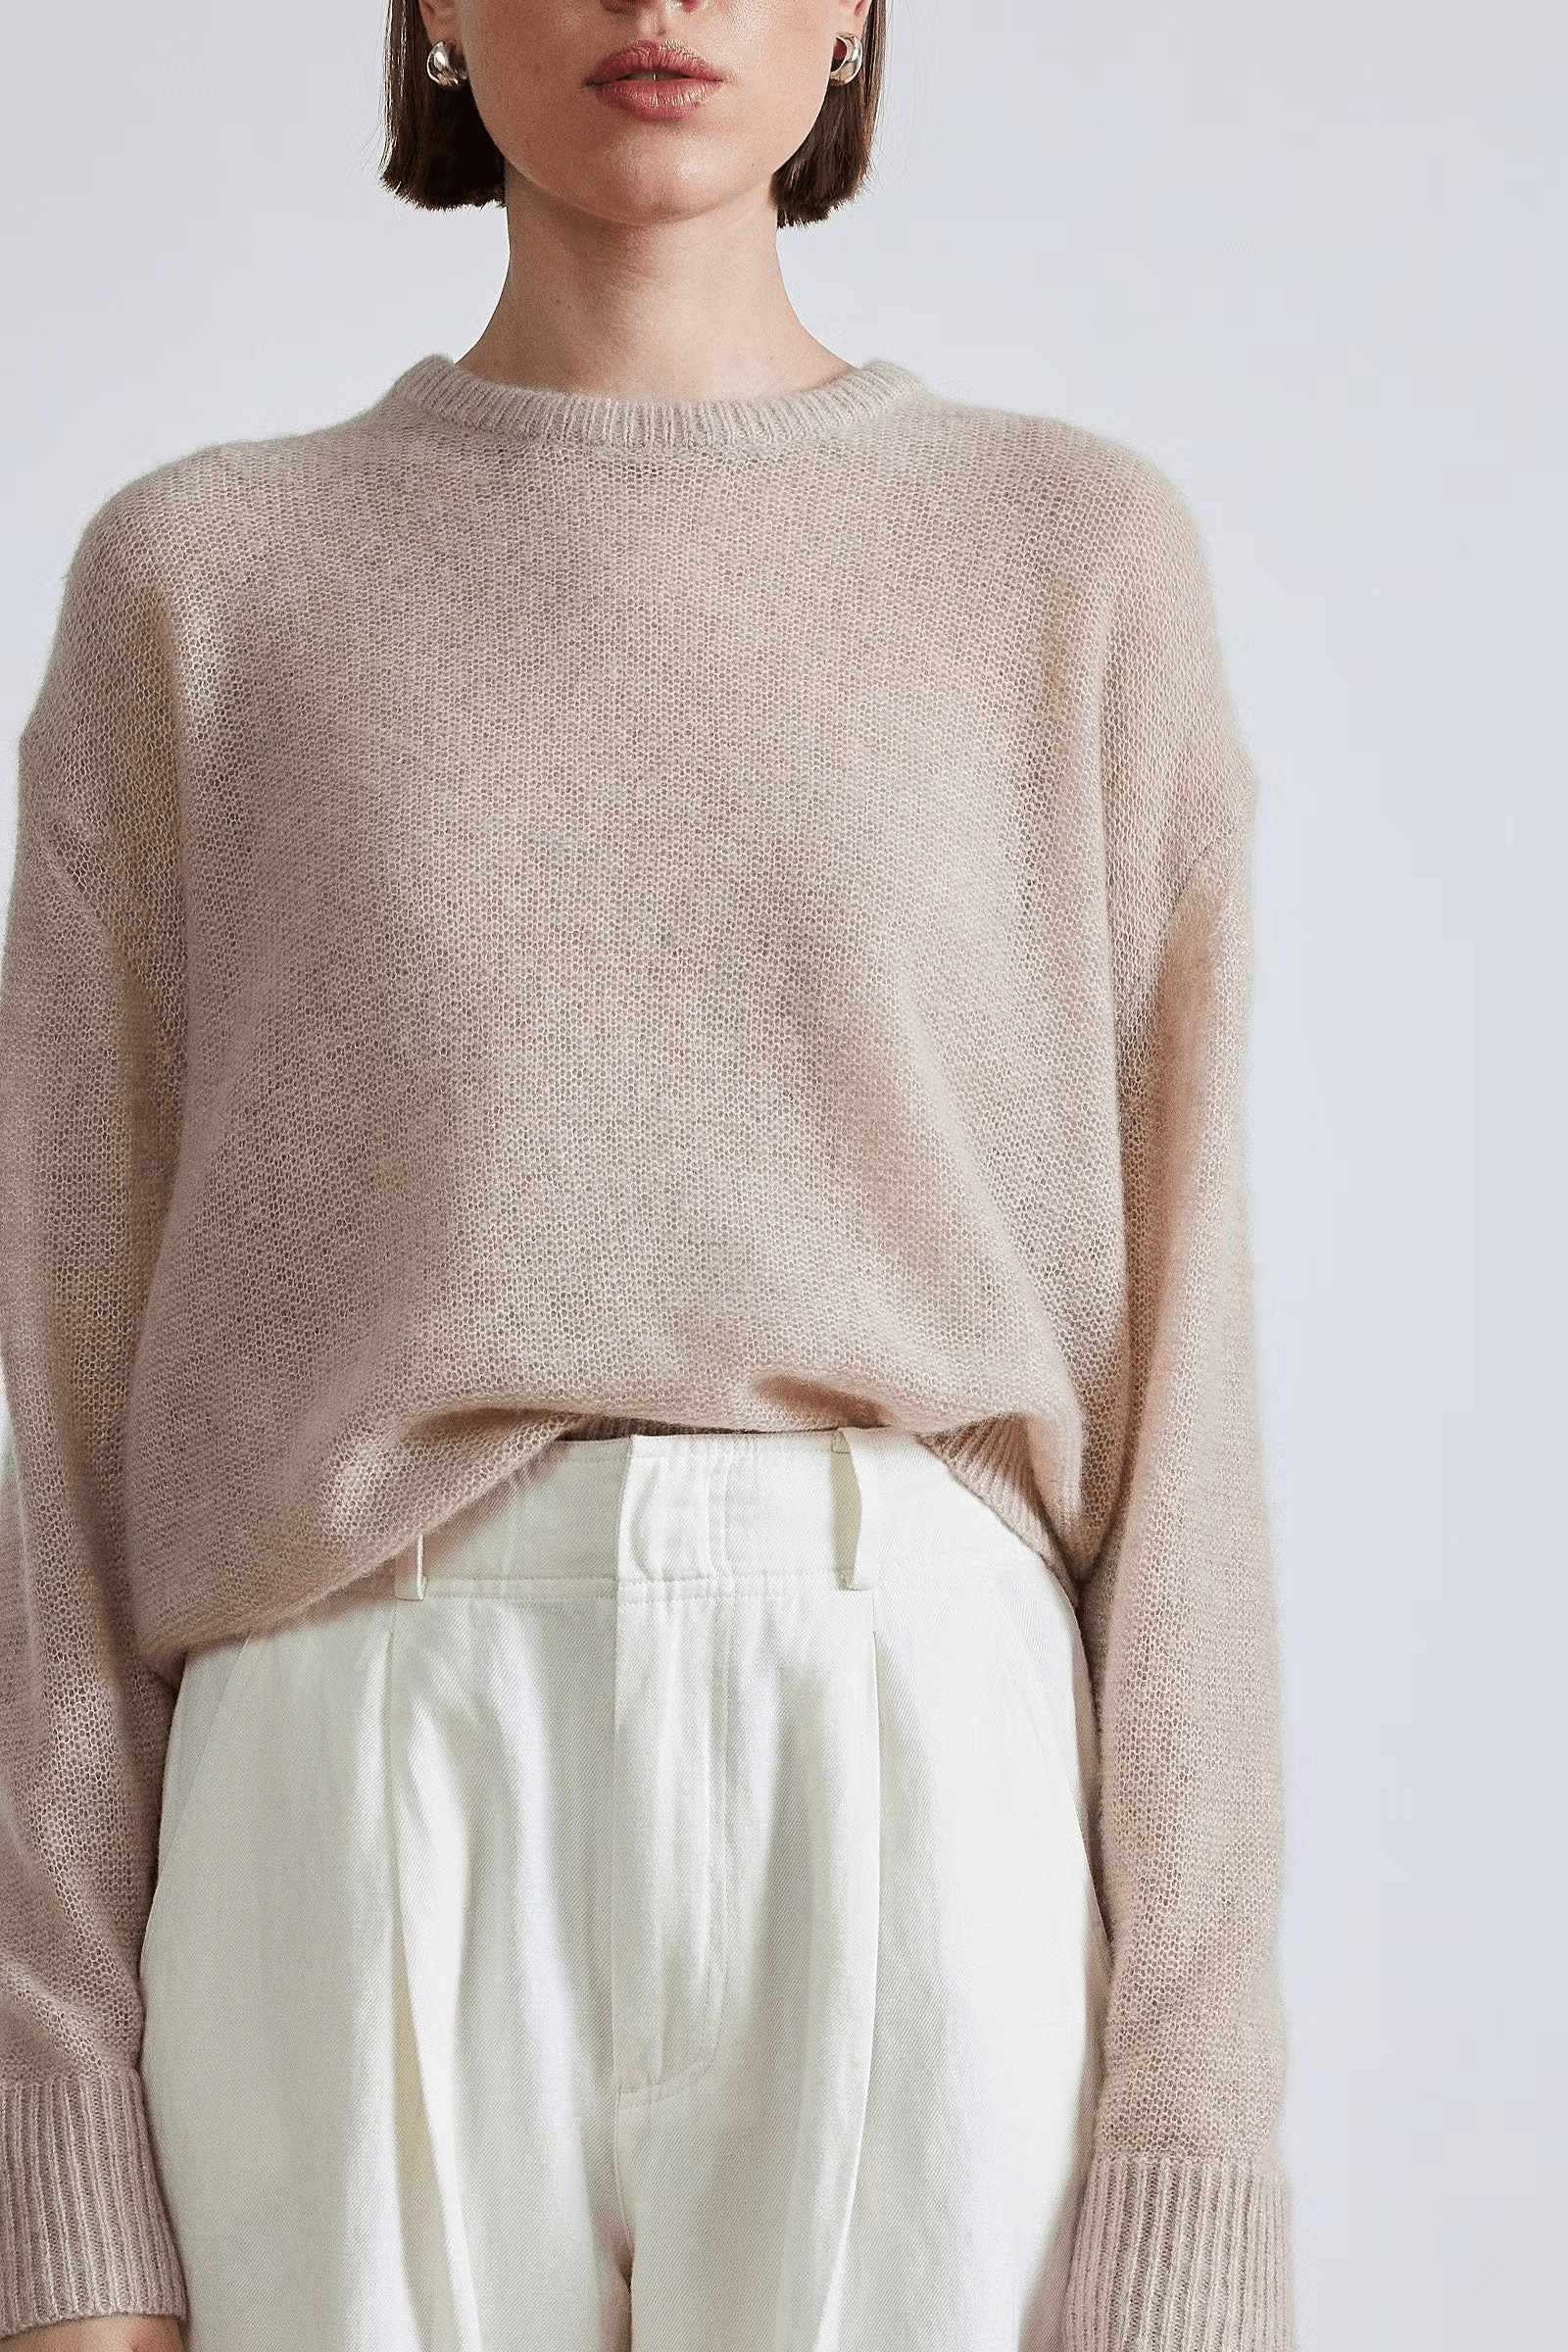 Apiece Apart Softest Tissue Weight Sweater - Sand